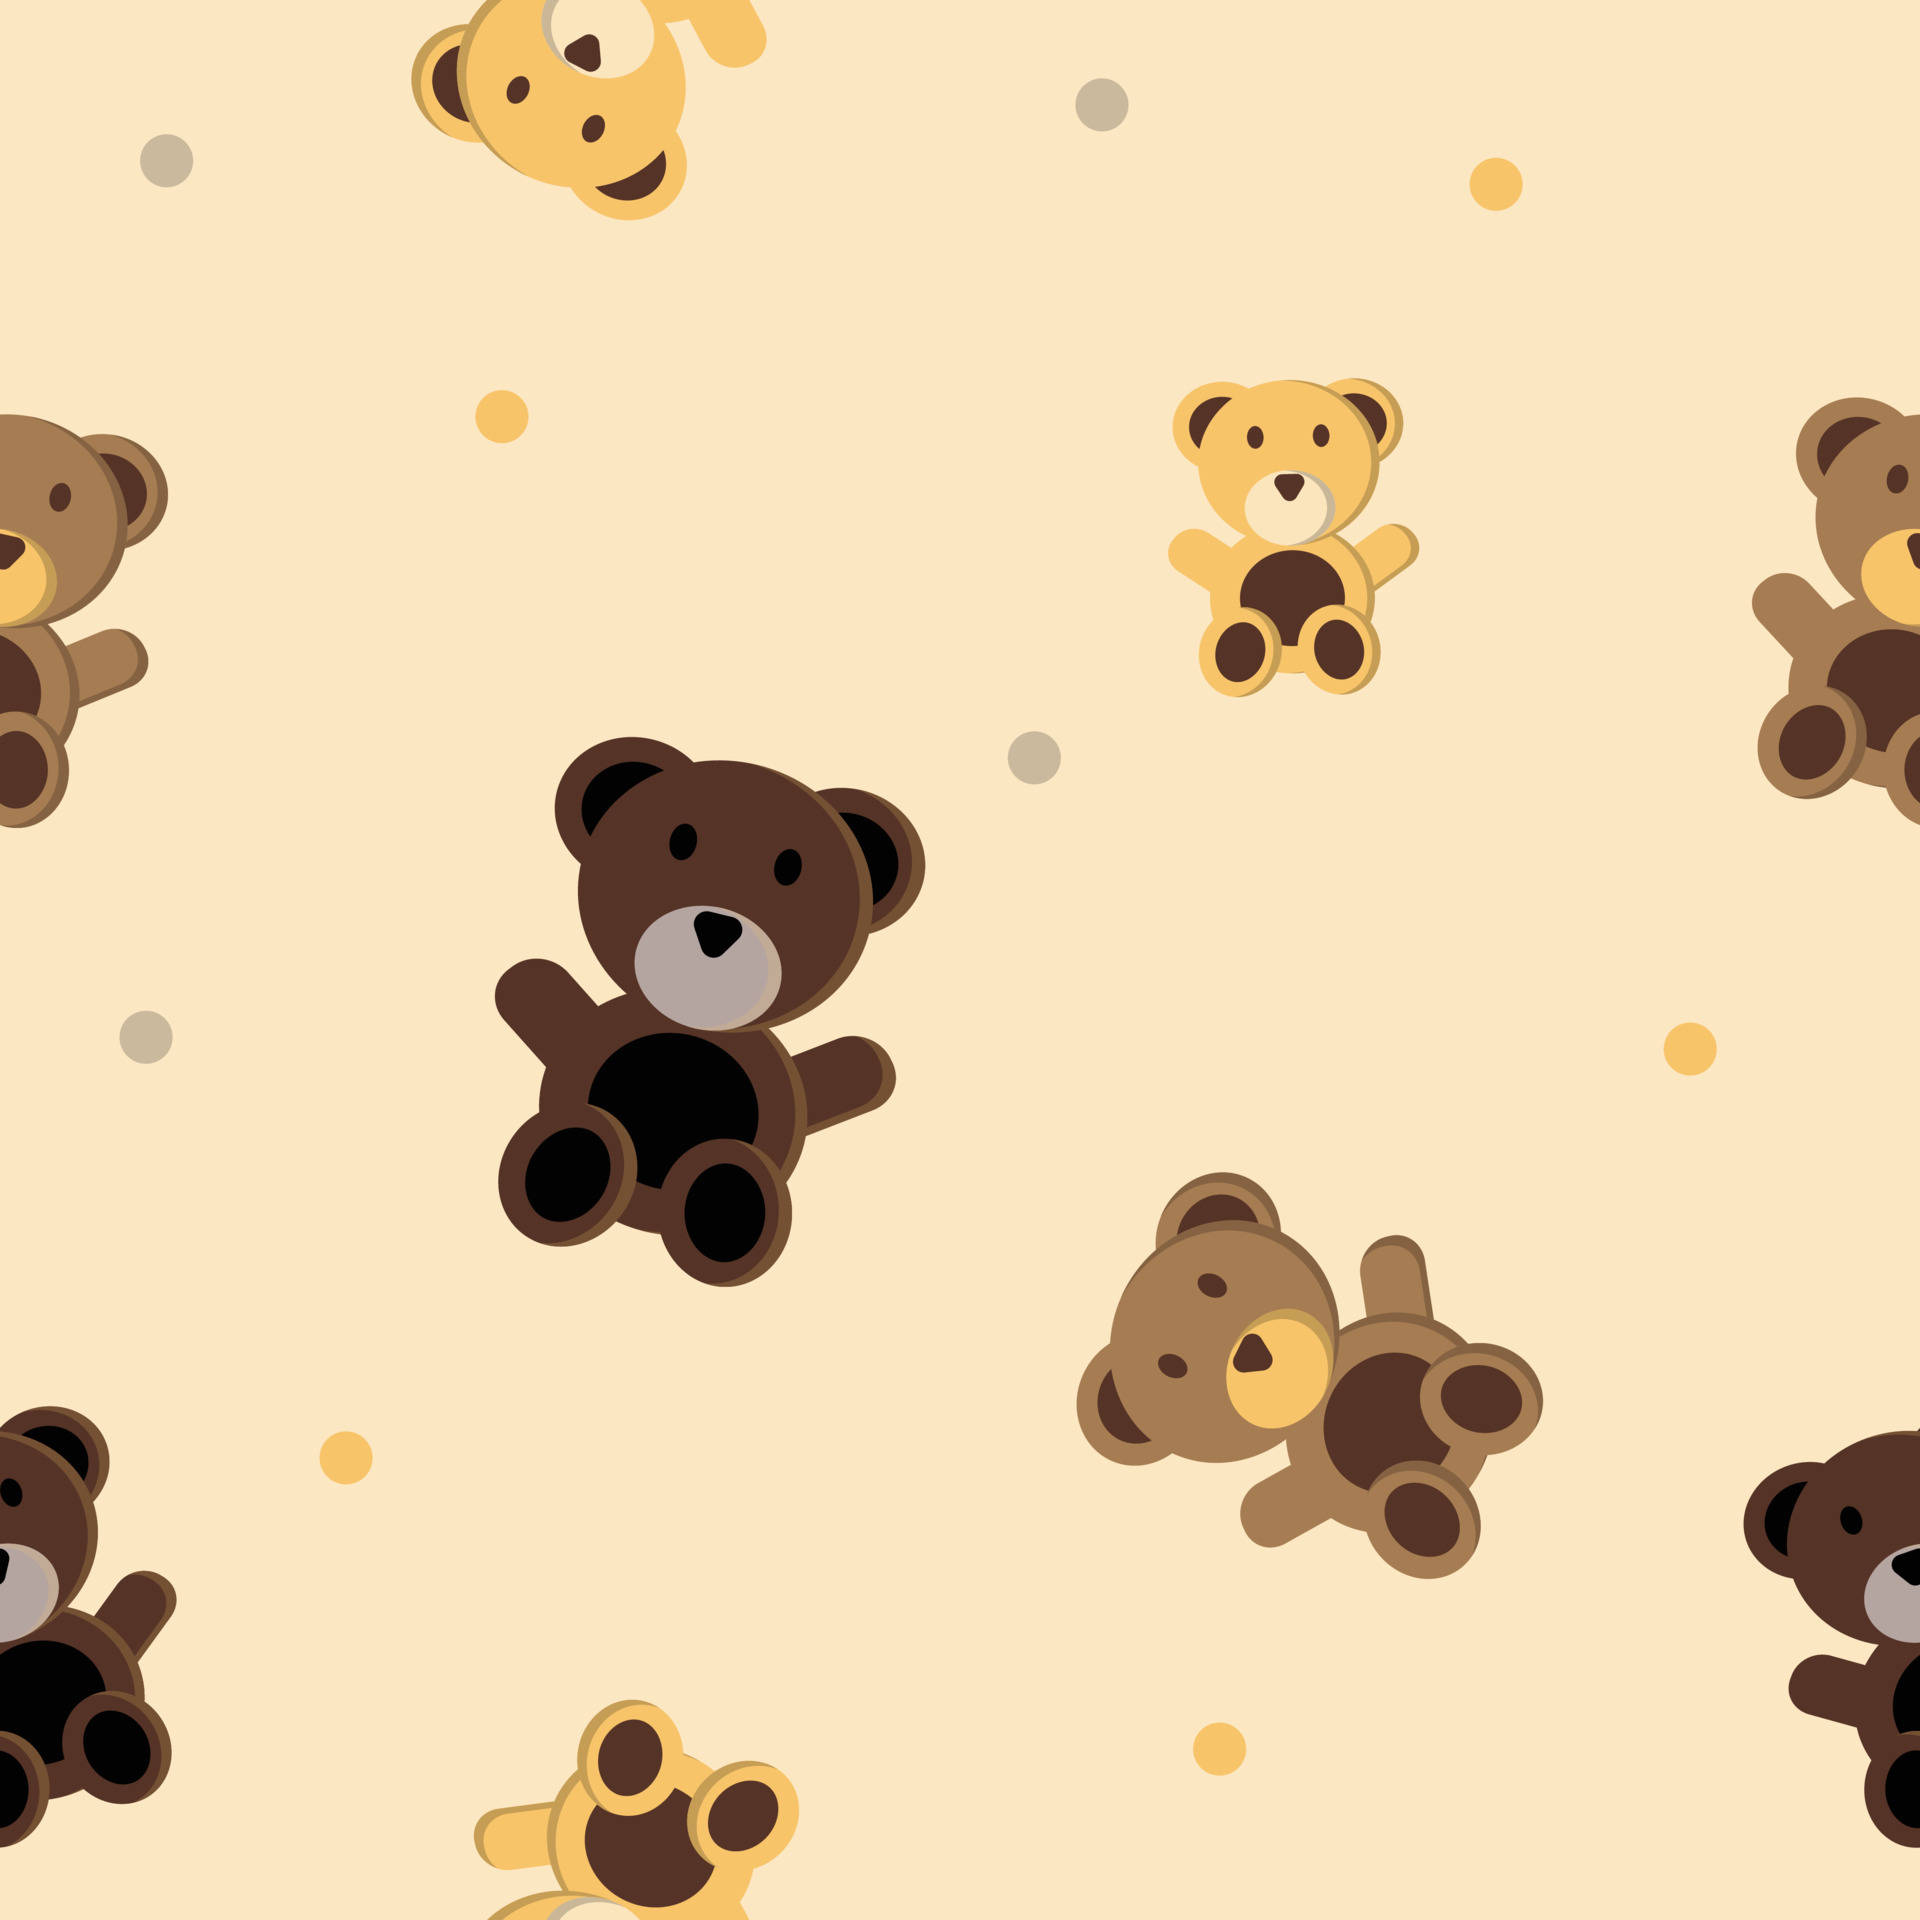 Denne bløde, søde brun bjørn vil smelte dit hjerte! Wallpaper